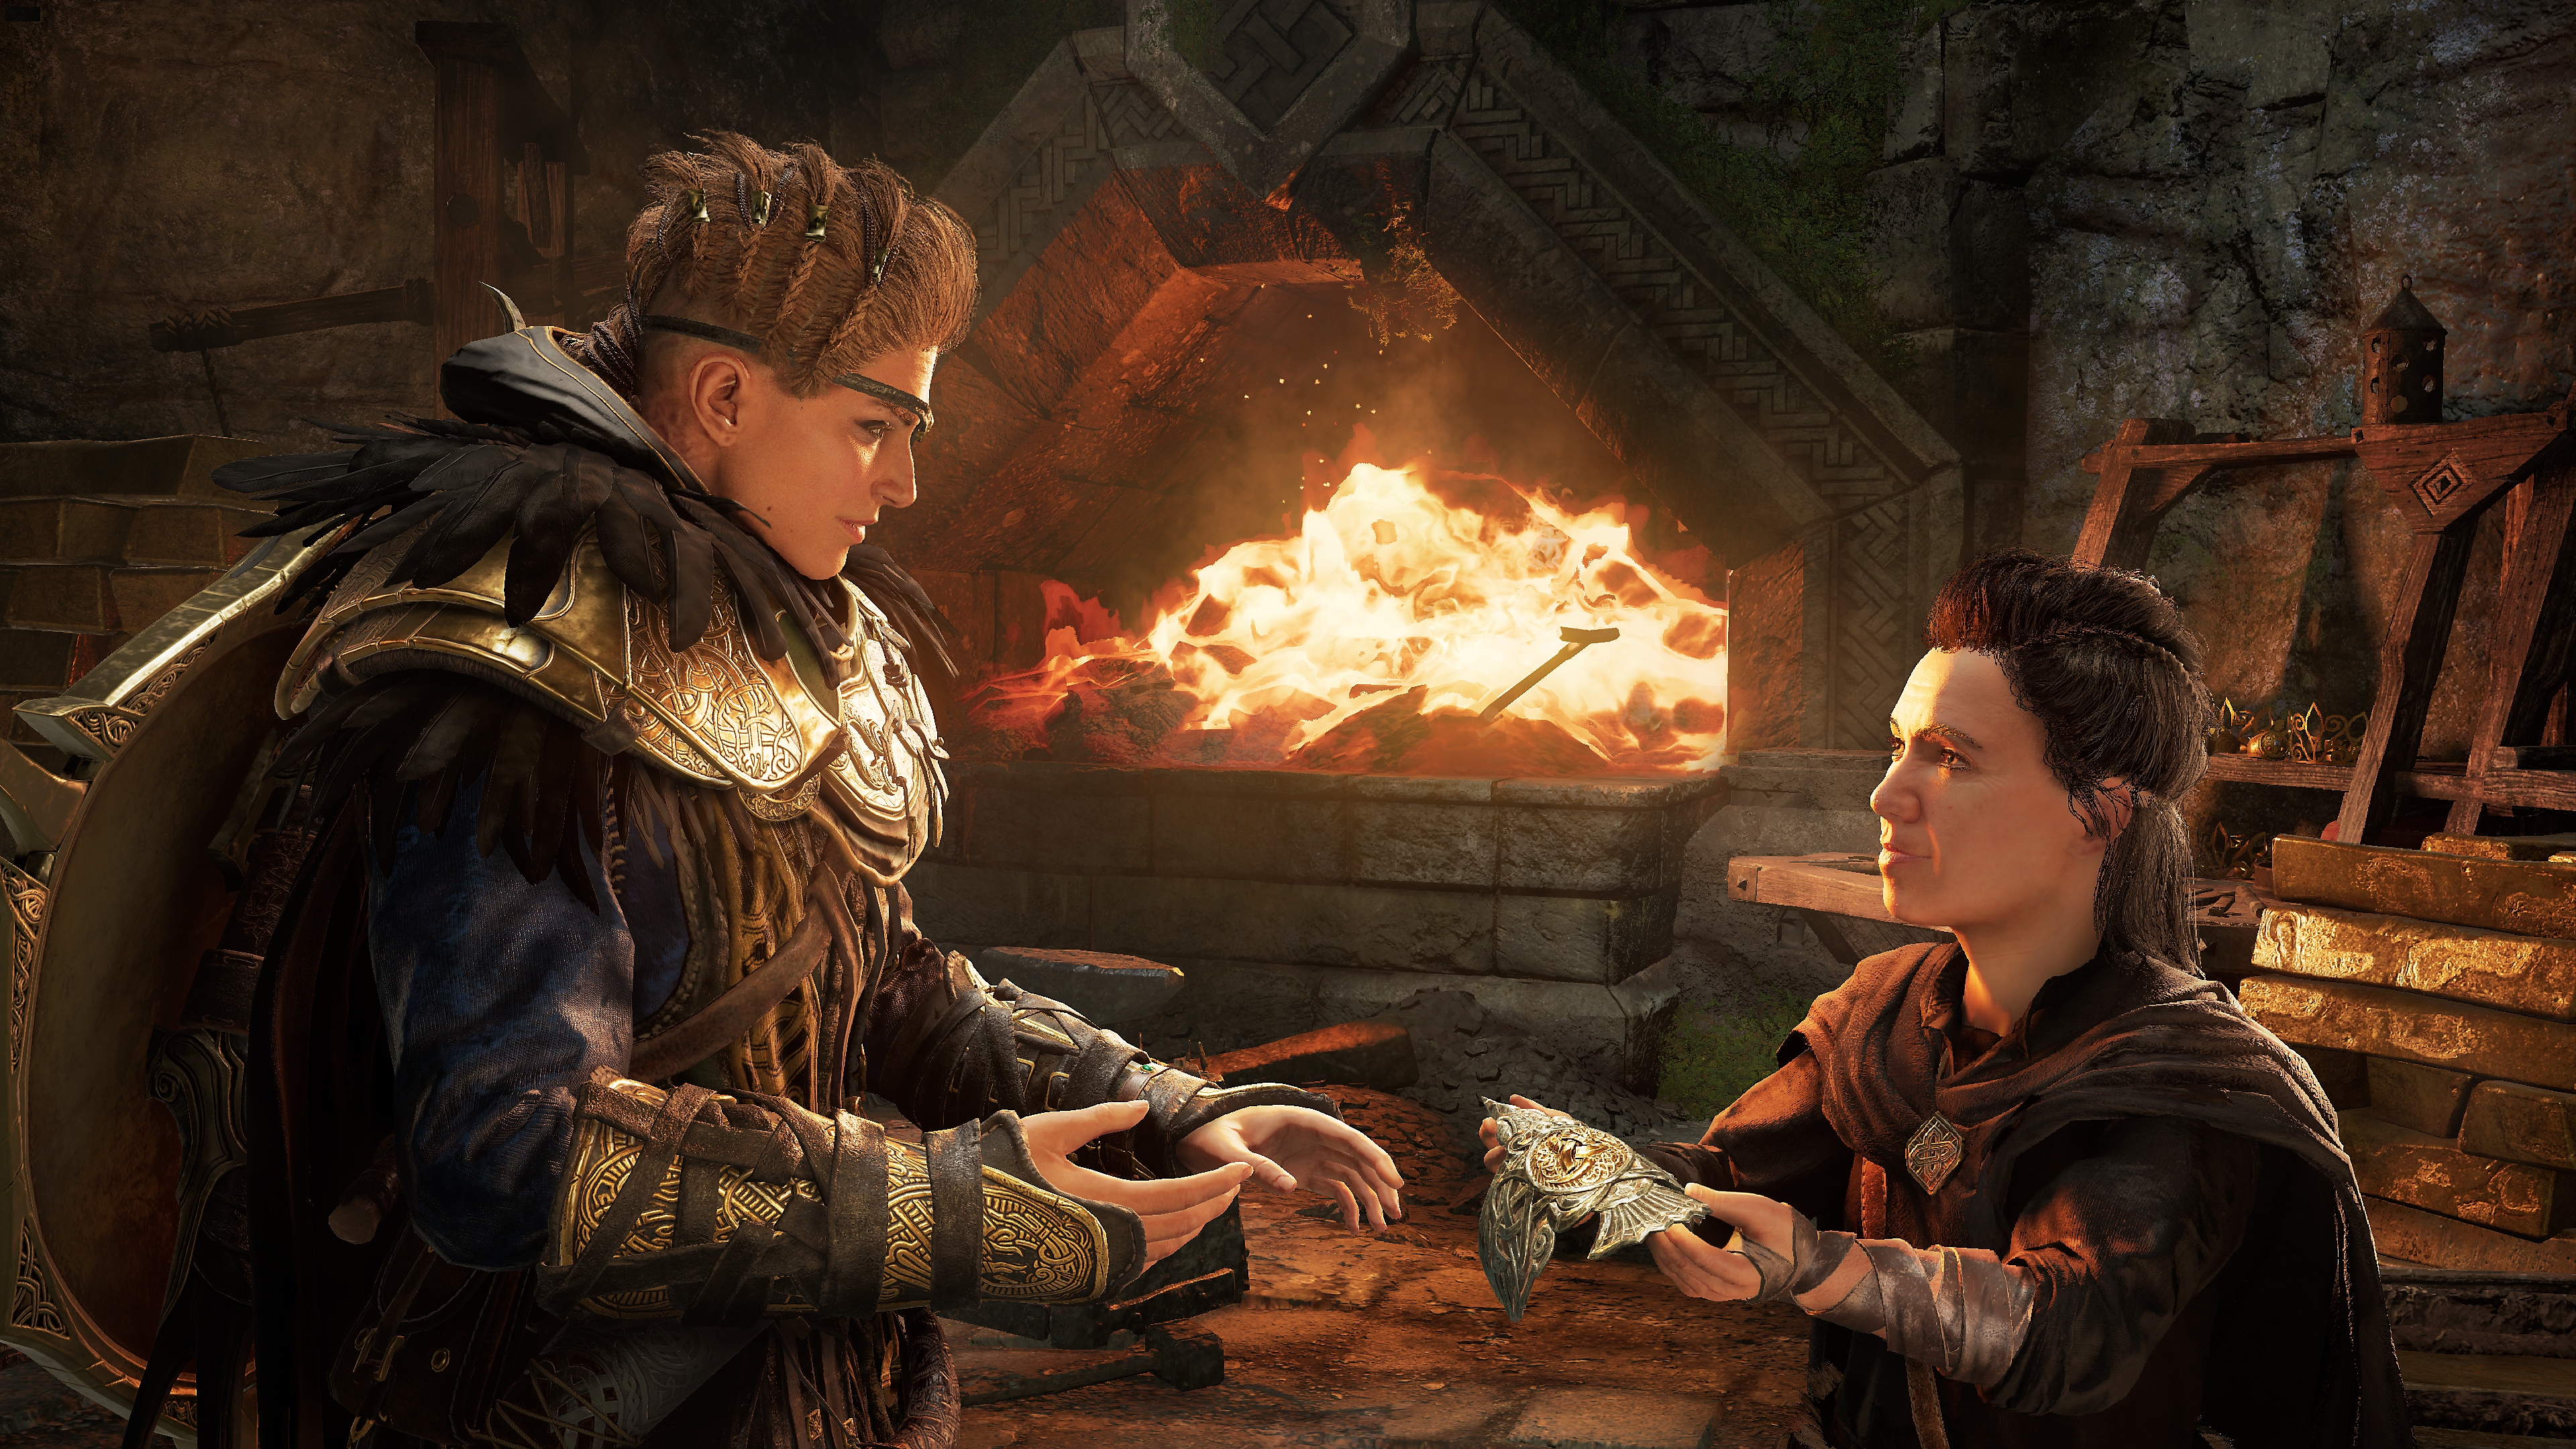 لقطة شاشة لتوسعة Assassin's Creed Valhalla Dawn of Ragnarok تظهر فيها الشخصية الرئيسية تحصل على عنصر من حليف قزم